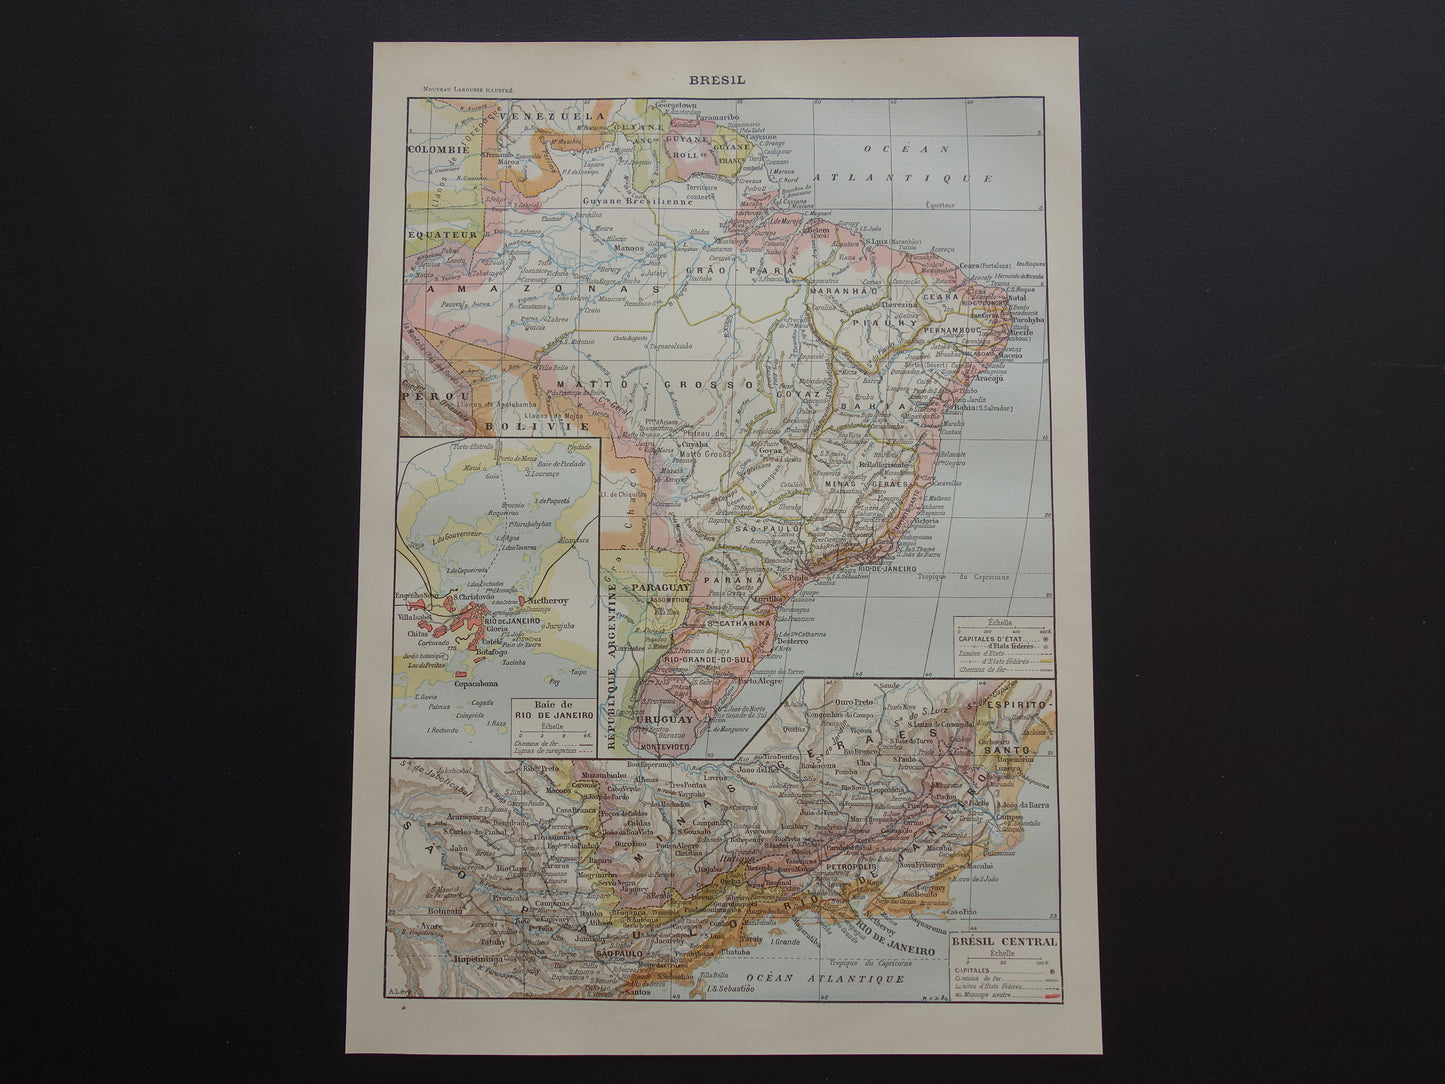 BRAZILIË Oude kaart van Brazilië uit 1902 Originele antieke landkaart vintage print Rio de Janeiro